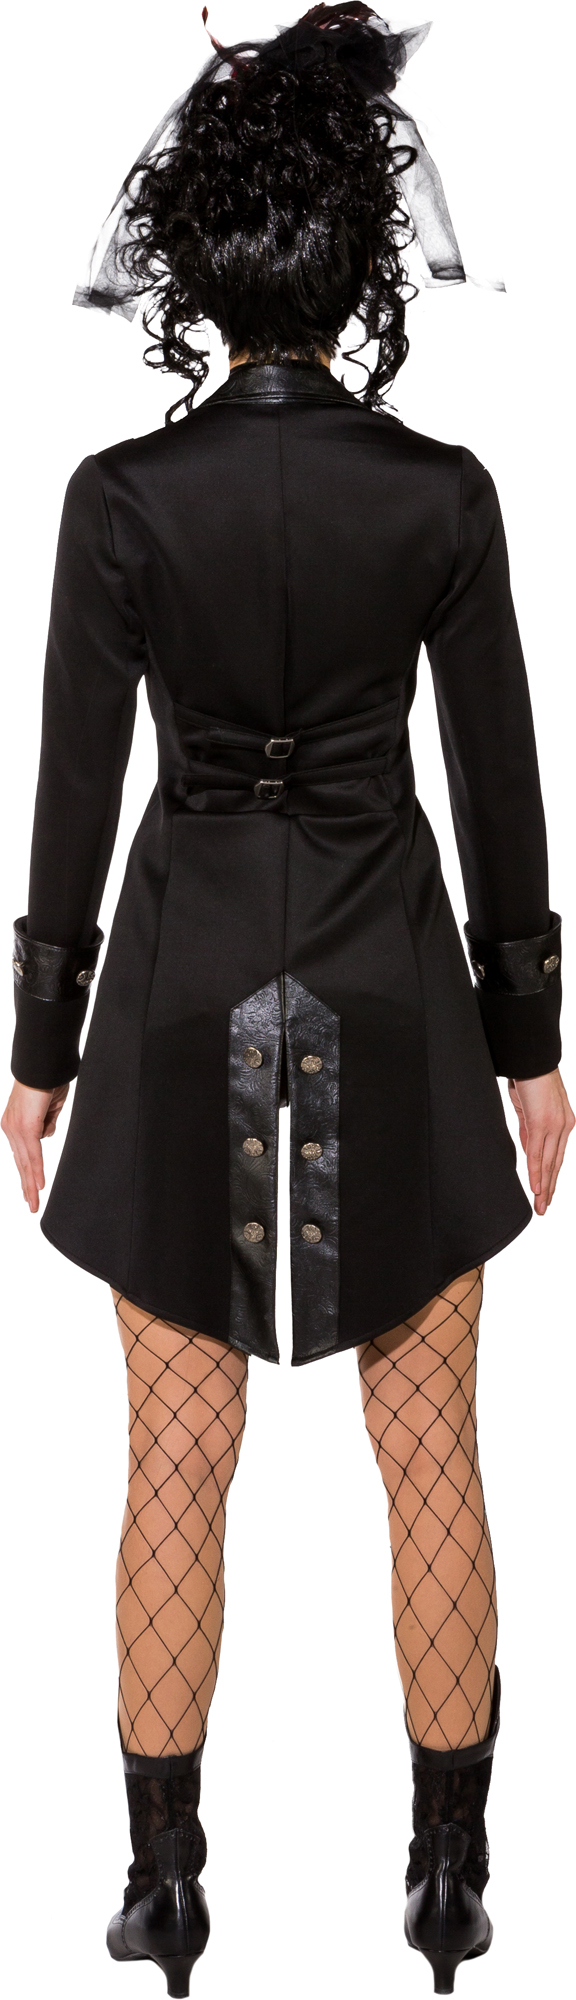 Gothic jacket, black